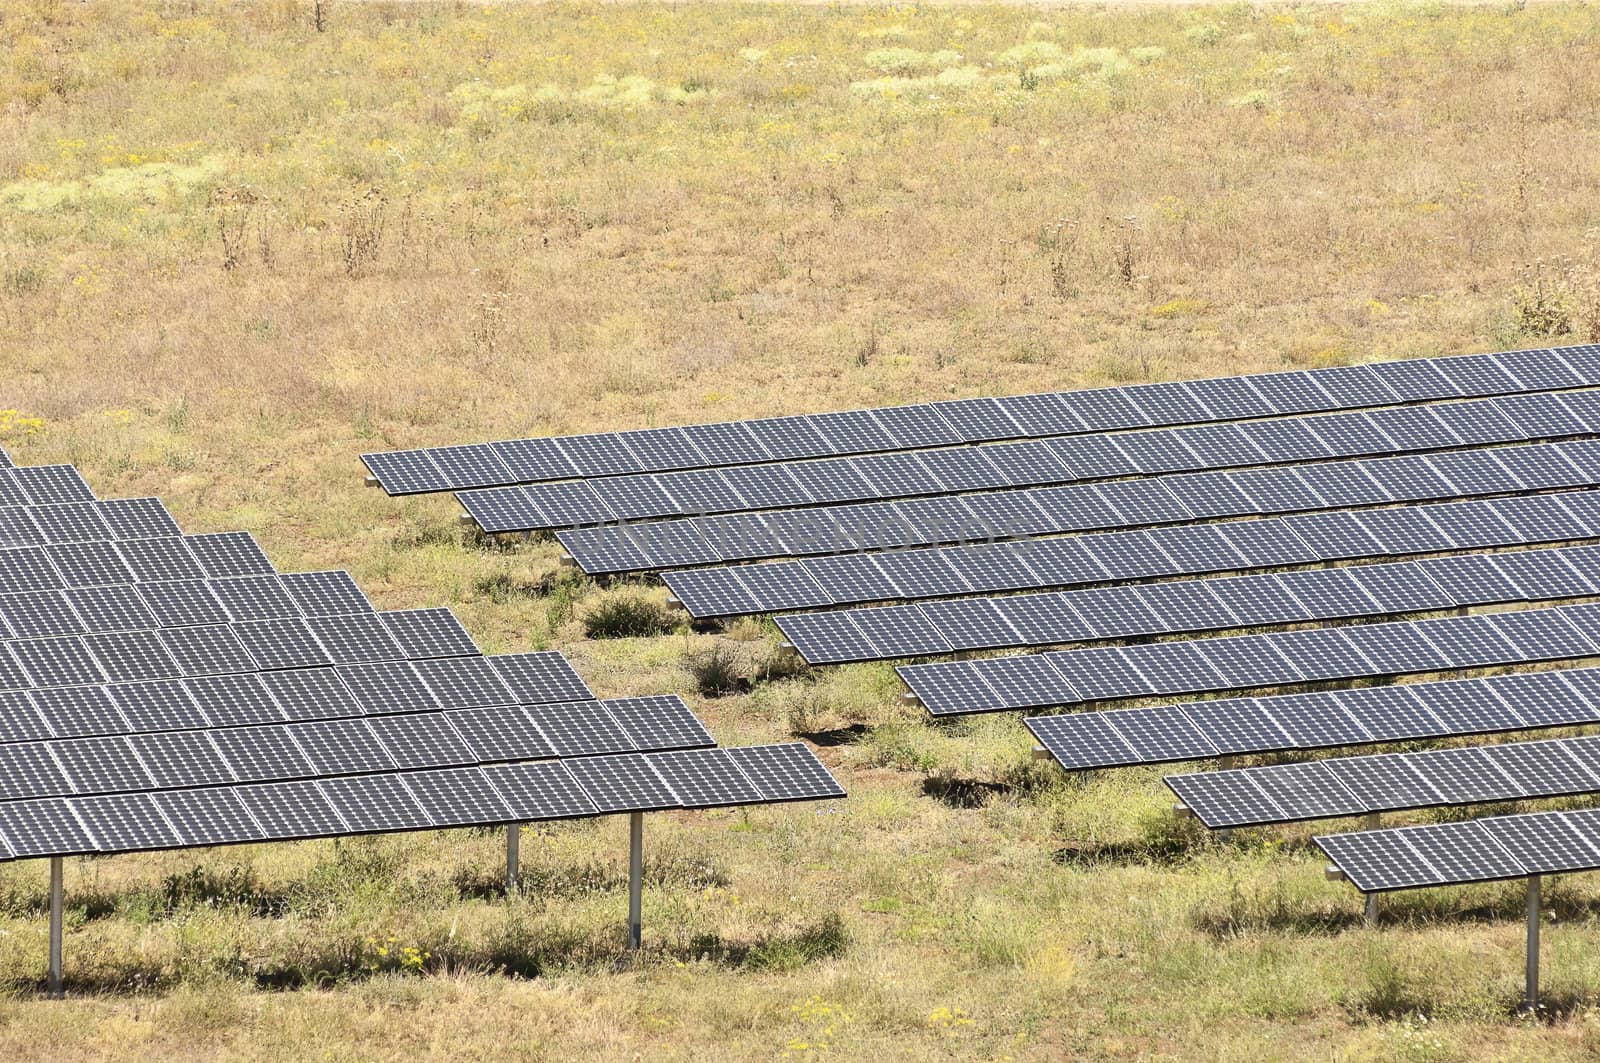 Serpa solar power plant by mrfotos